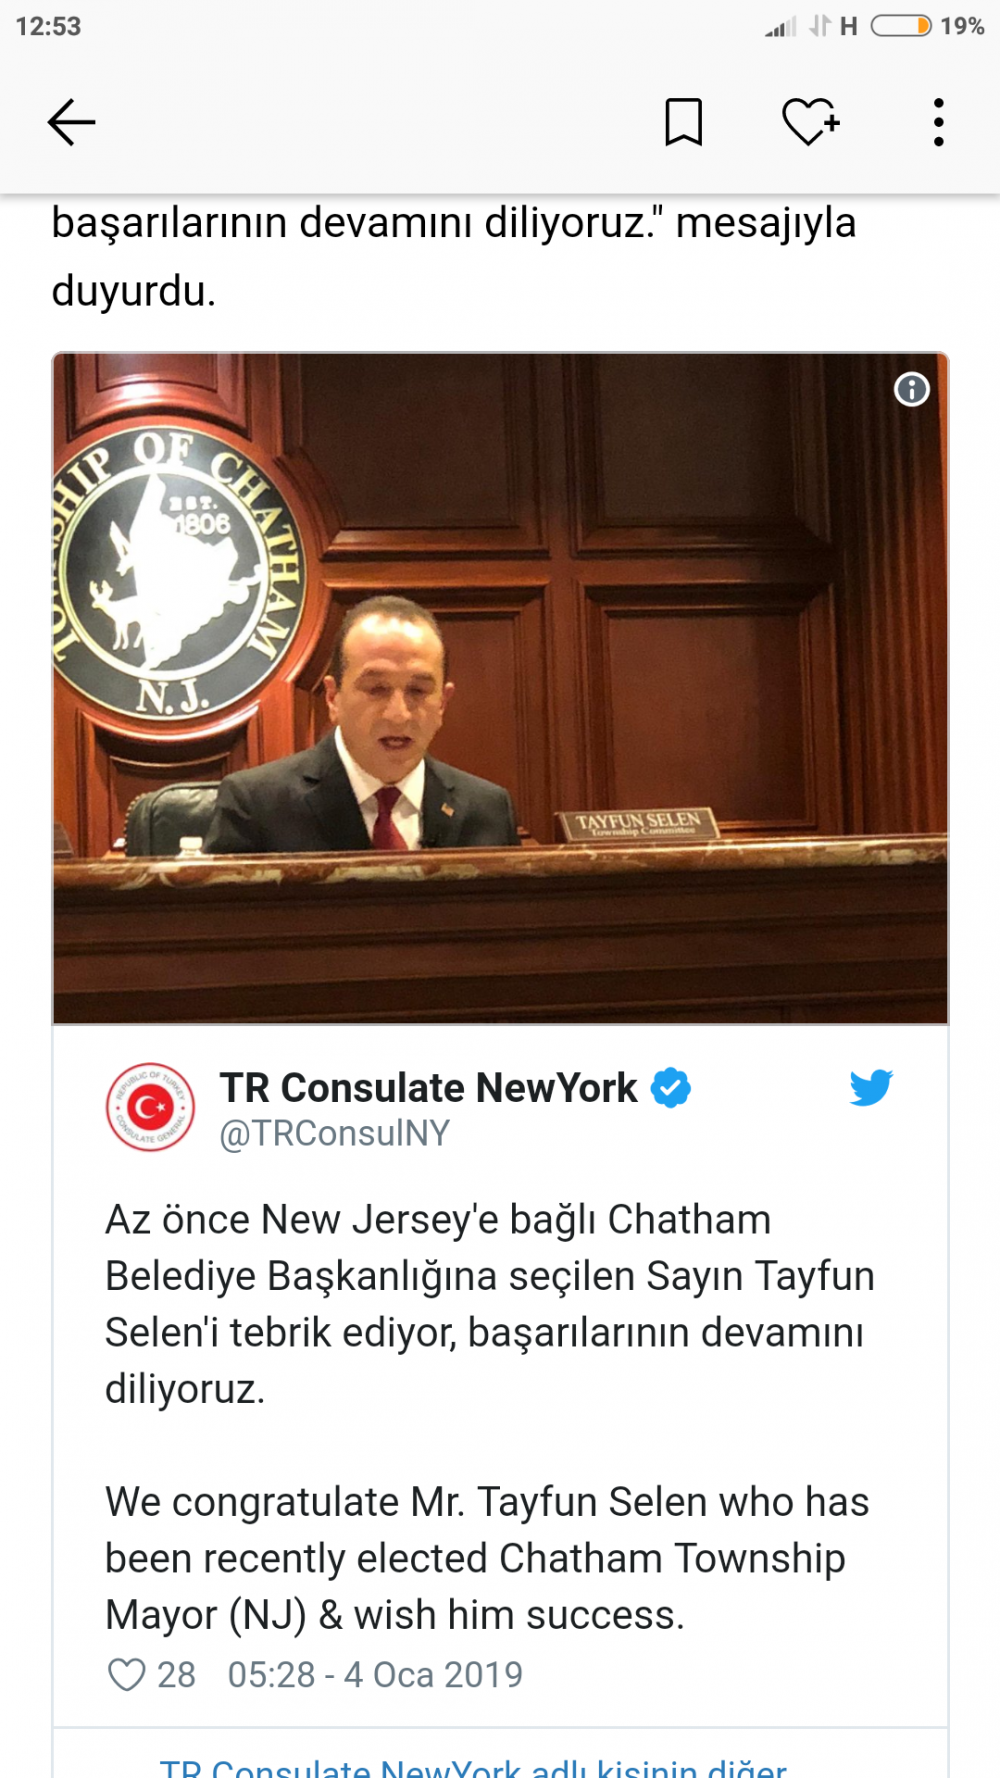 Amerika da ilk kez bir Türk belediye başkanı seçildi haberin detayı açıklama da